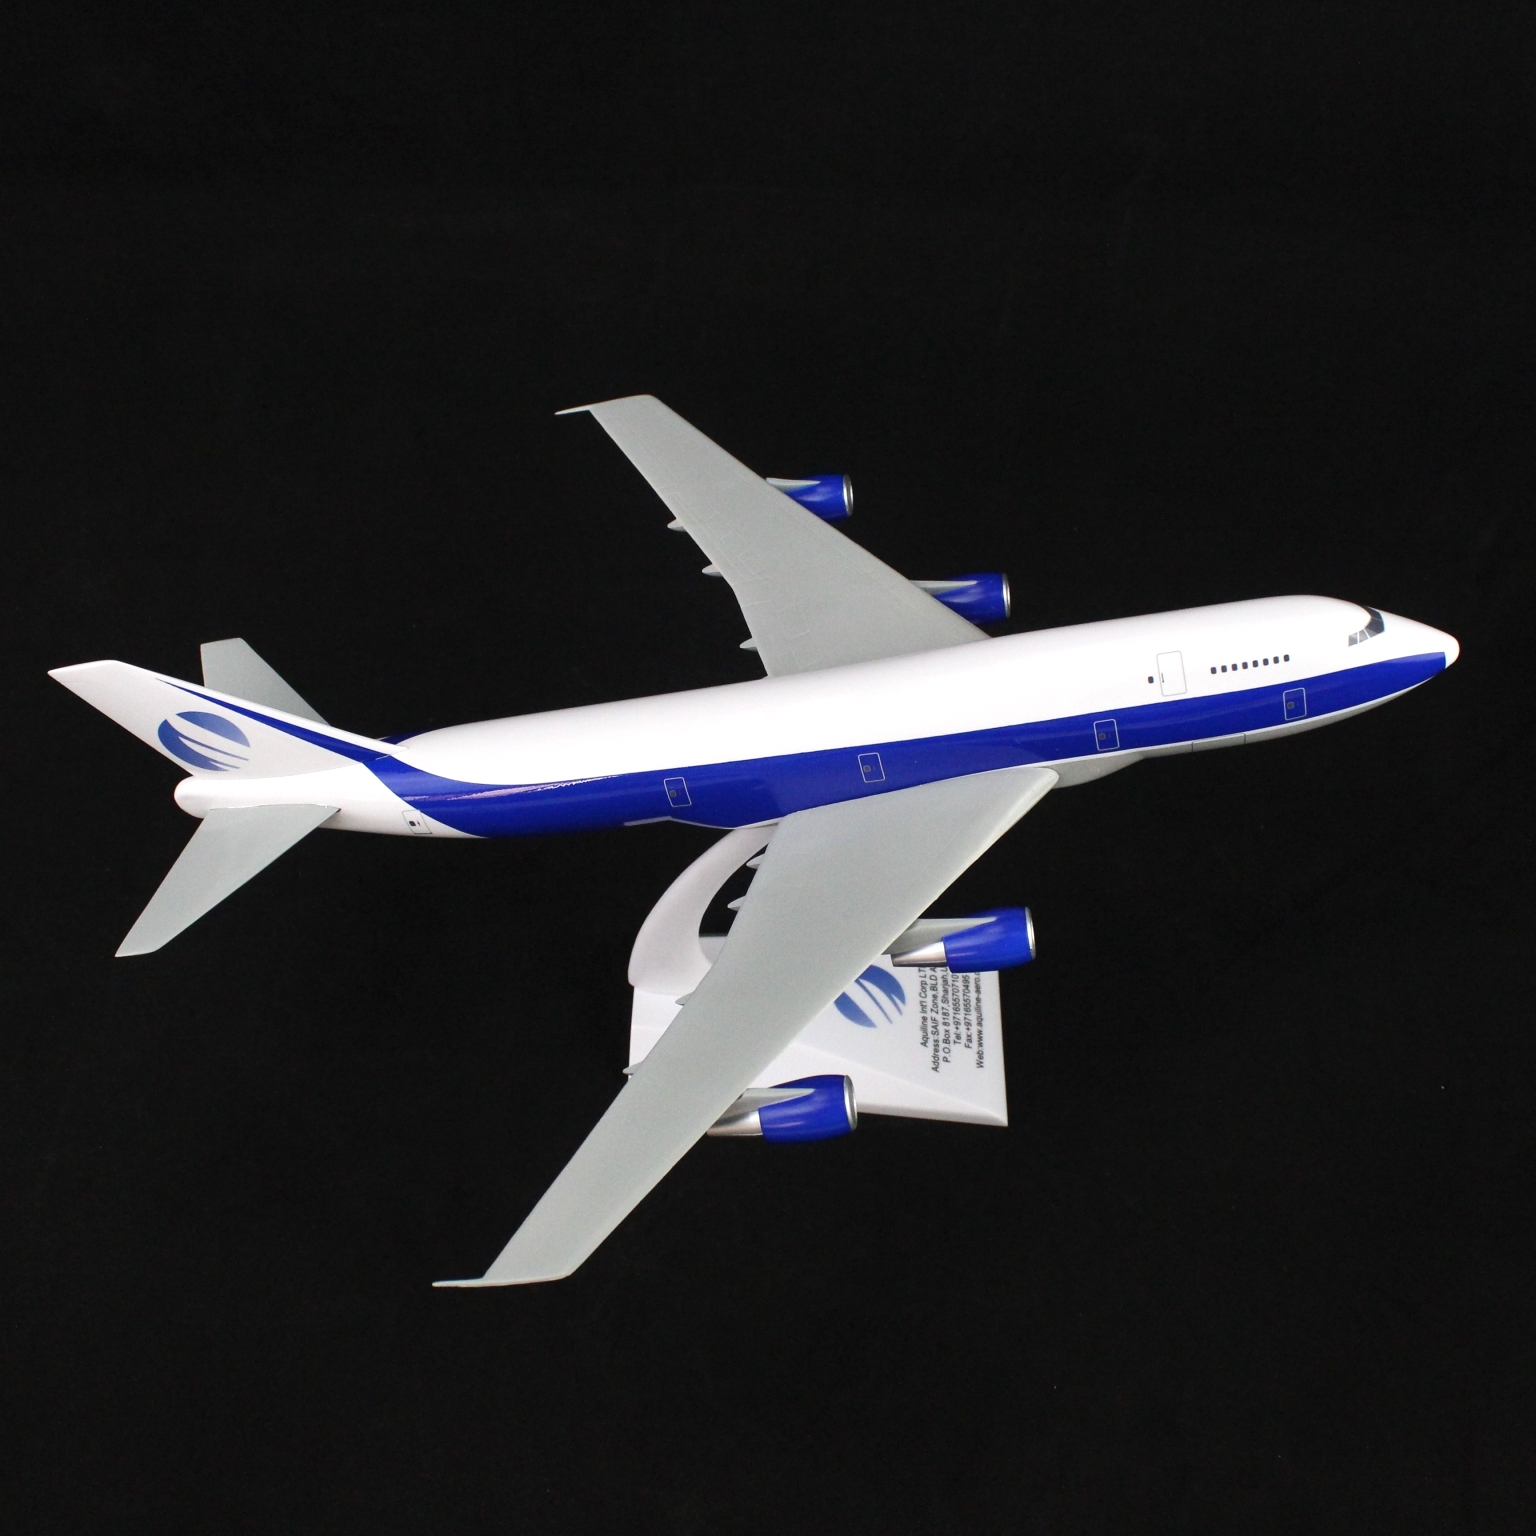 boeing747-300f 1:200飞机模型高档航空摆件展览品收藏品